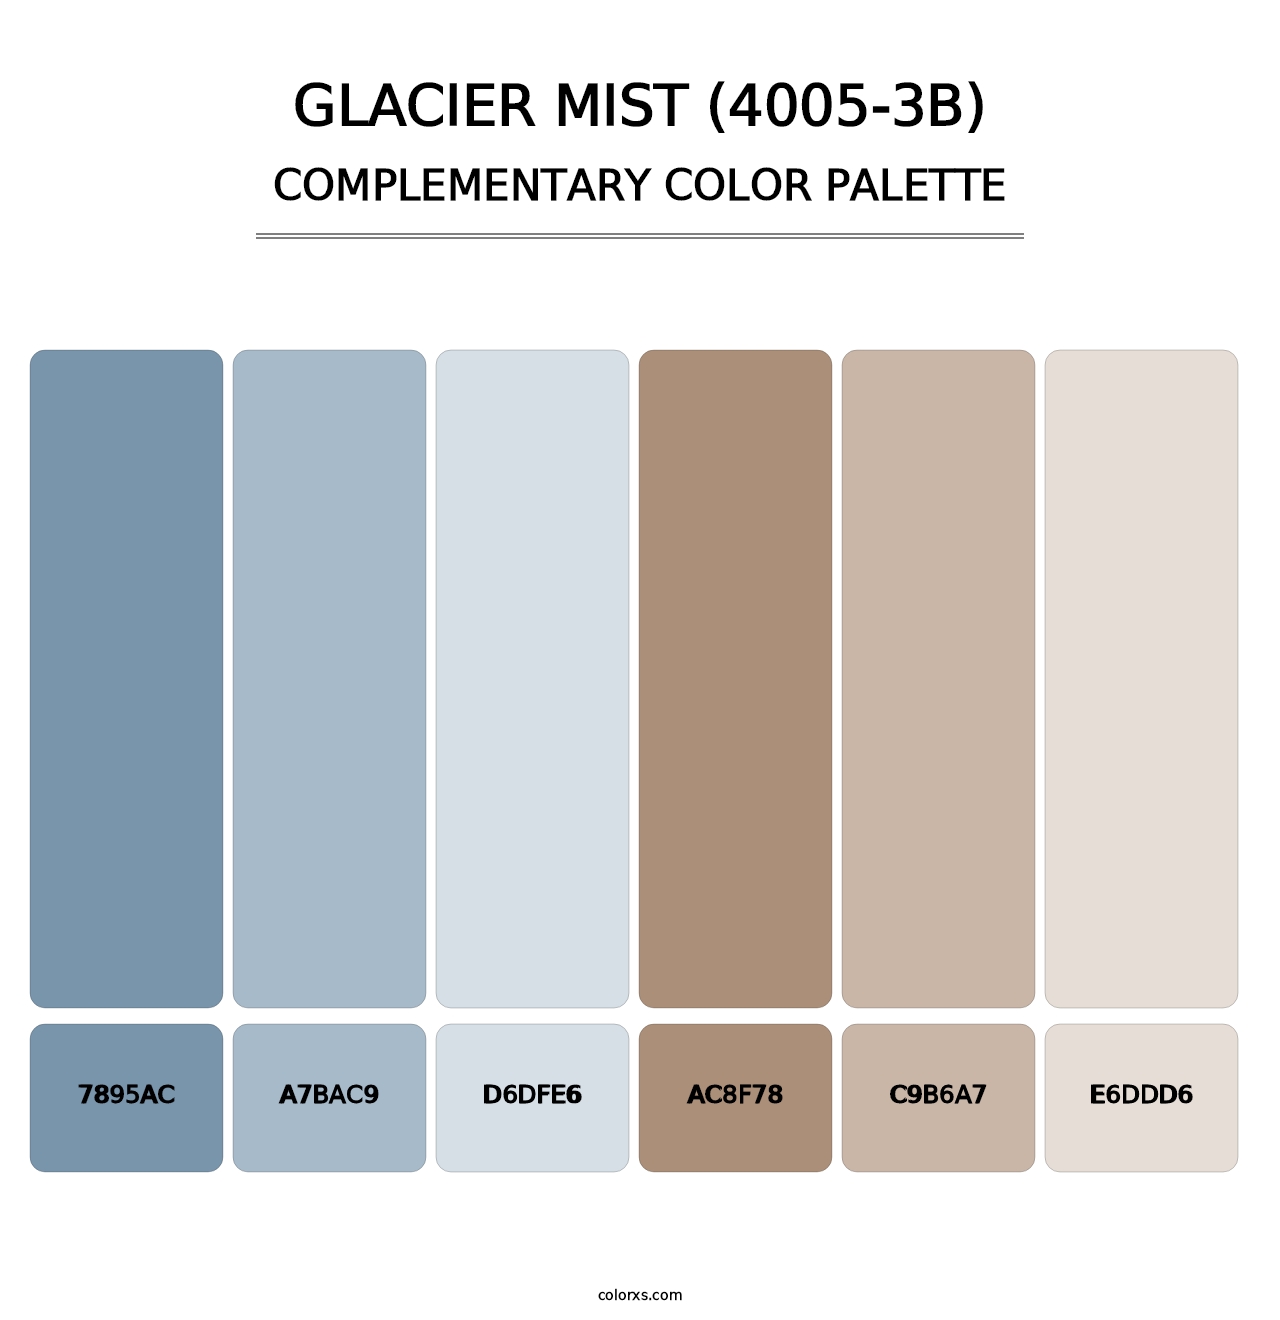 Glacier Mist (4005-3B) - Complementary Color Palette